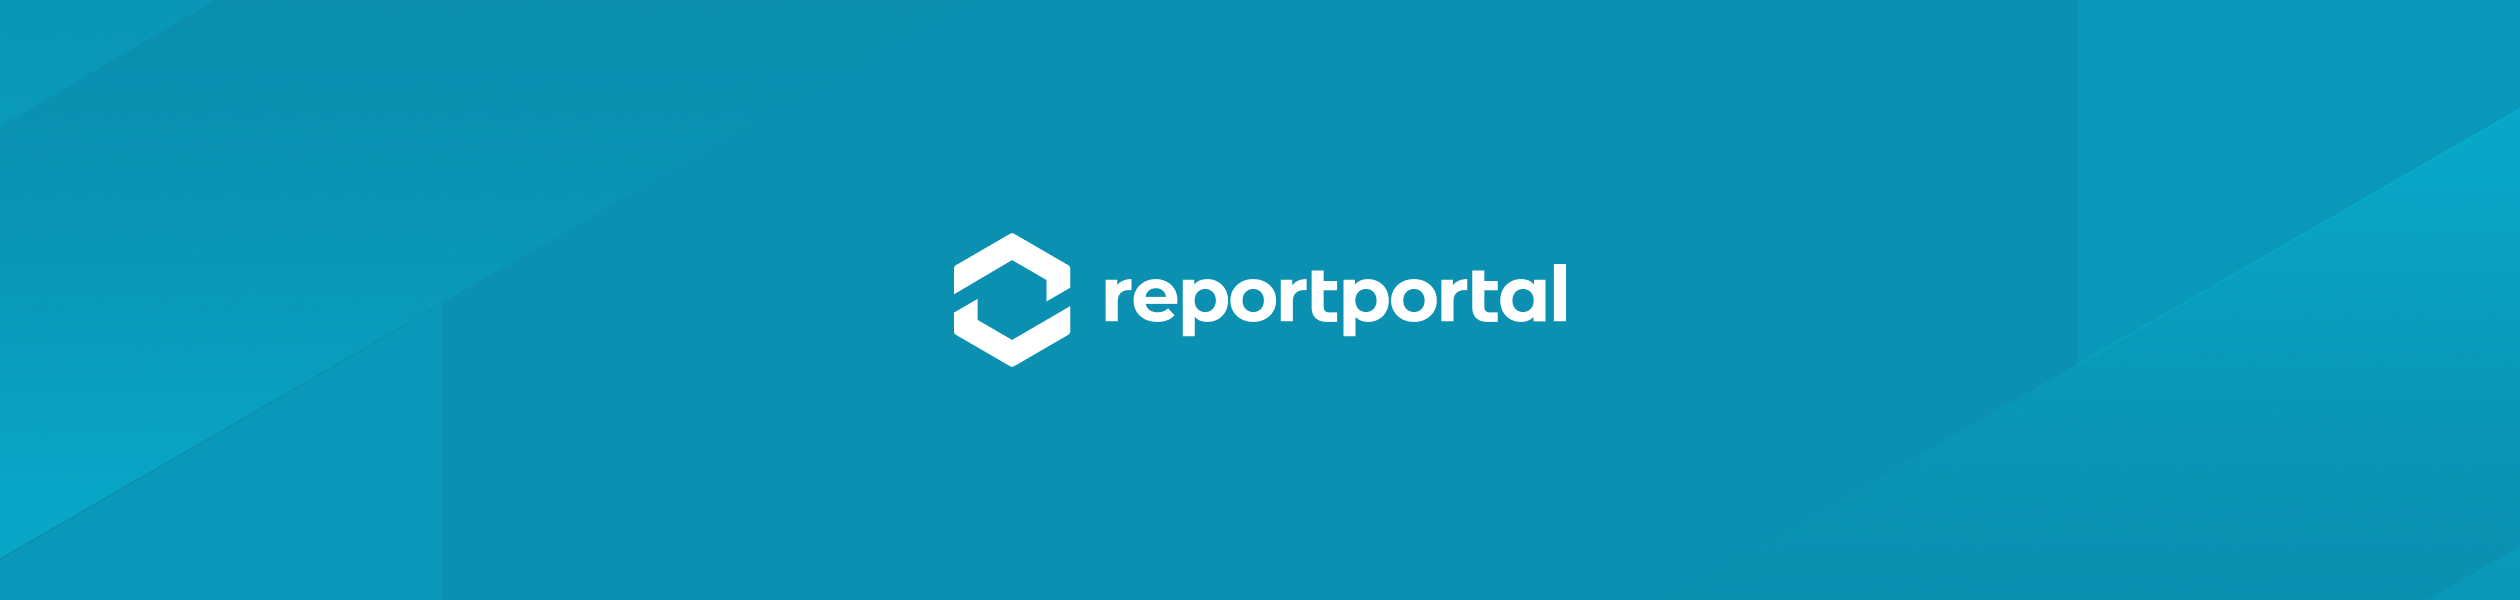 ReportPortal